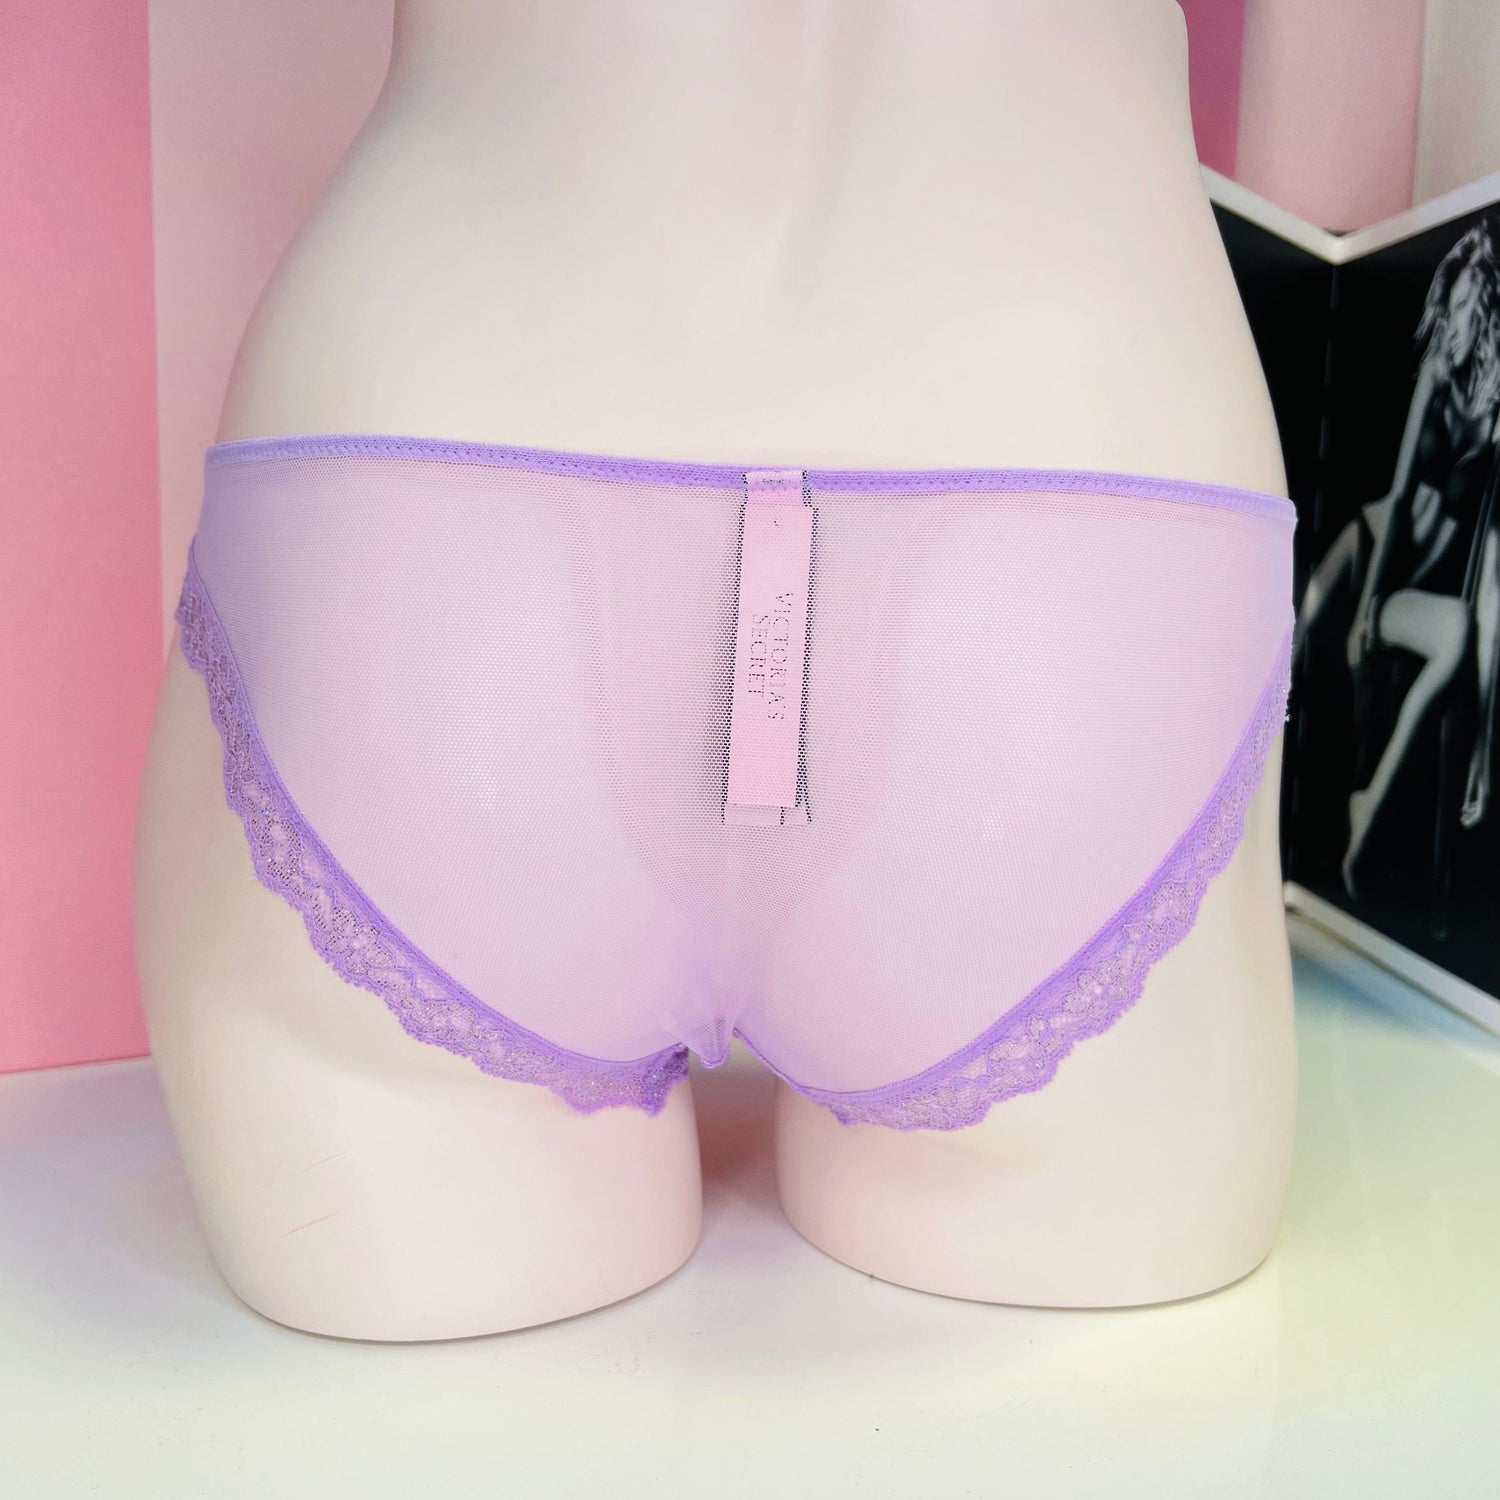 Síťované kalhotky - Cheekini Victoria’s Secret